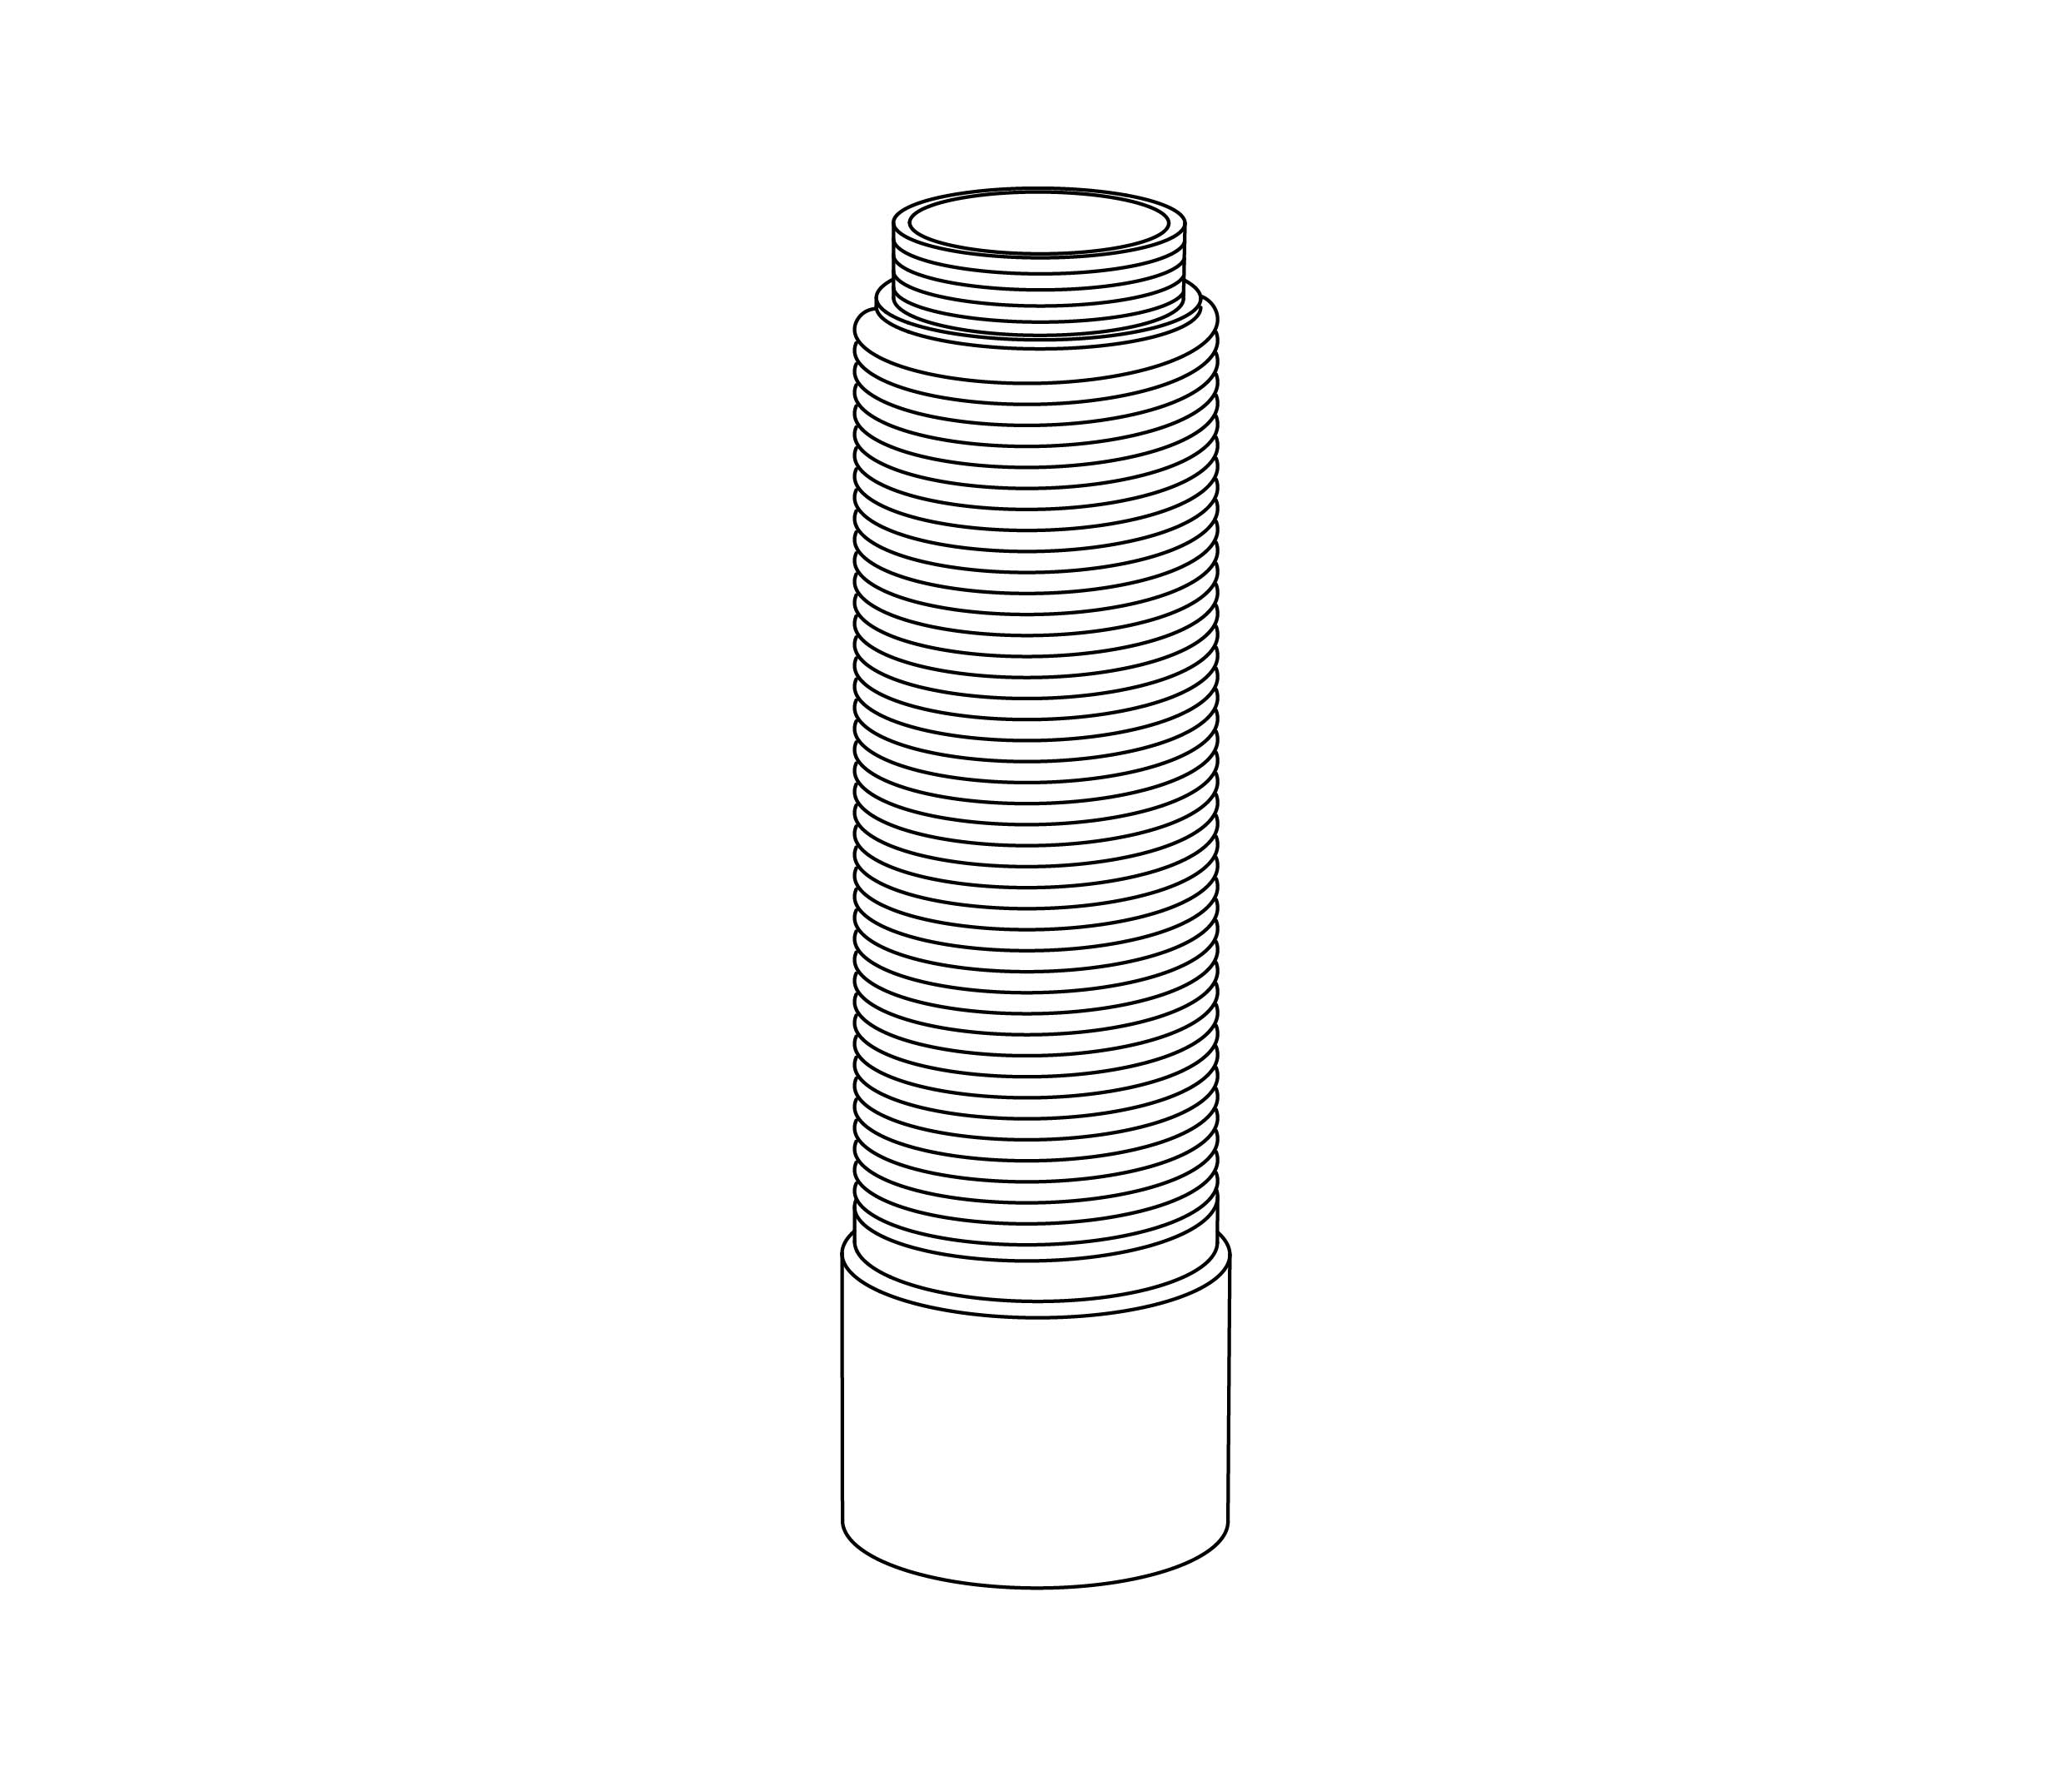 S00-3DT1 Rim mounted diverter tube, threaded top